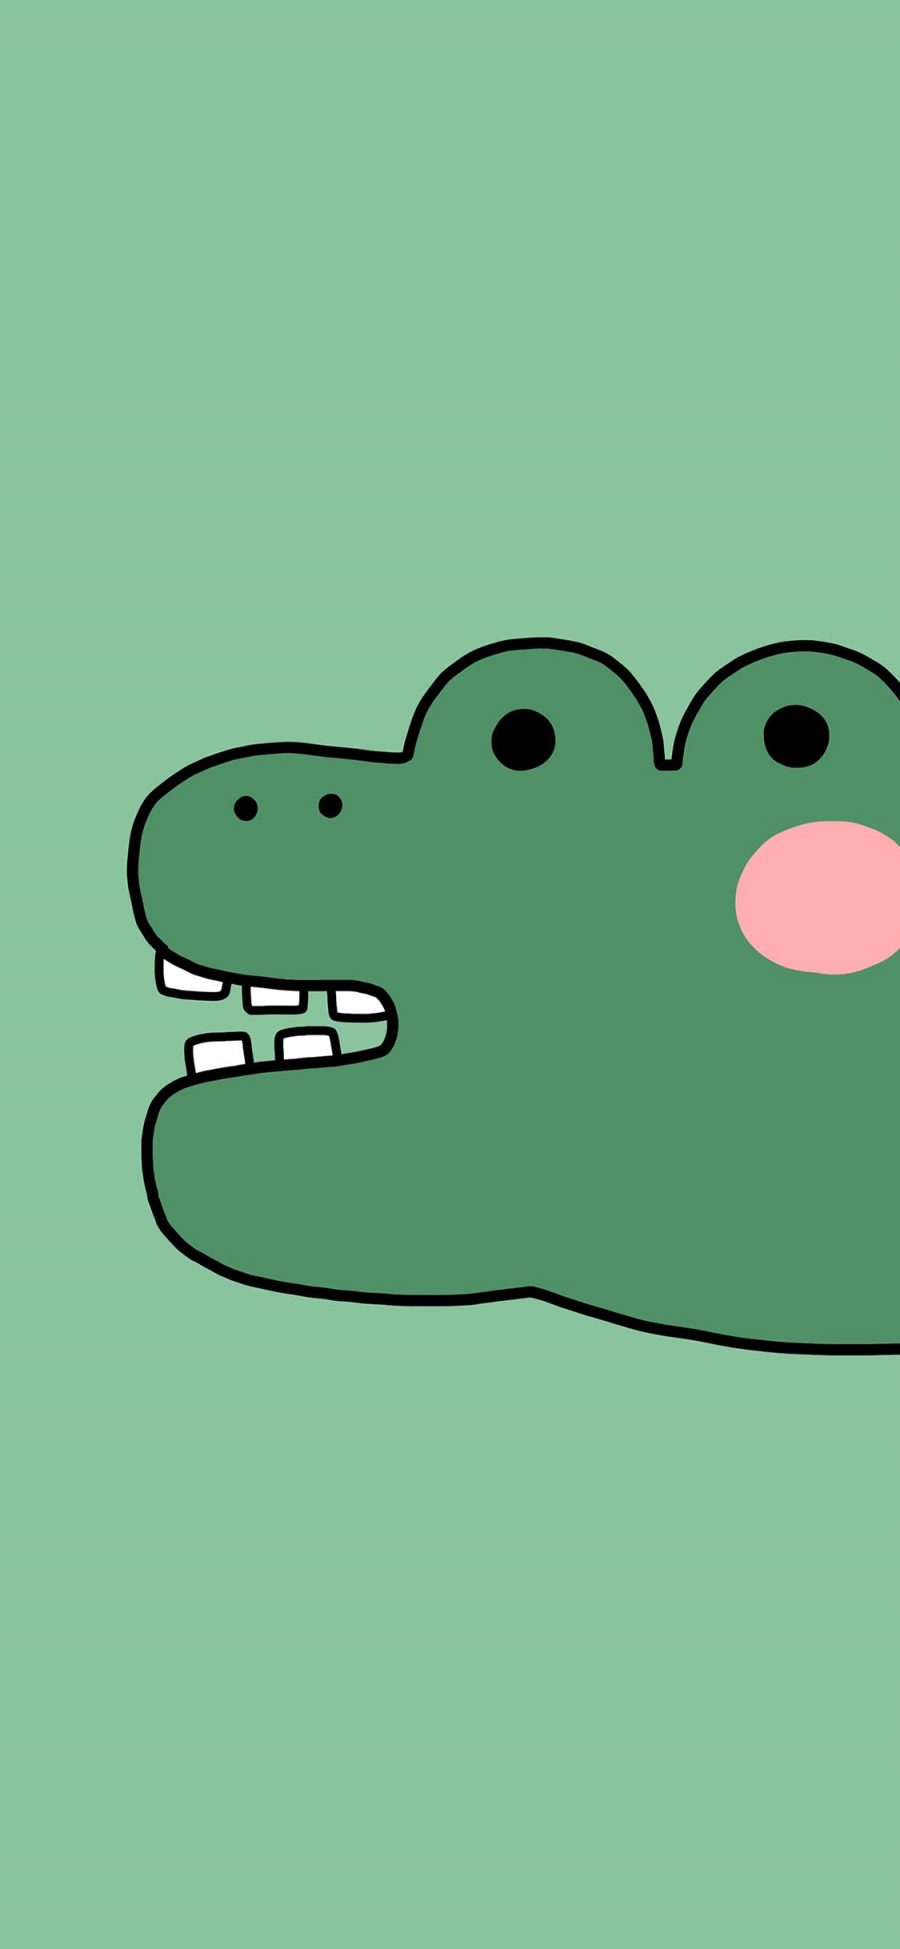 [2436×1125]鳄鱼 卡通 绿色 牙齿 苹果手机动漫壁纸图片